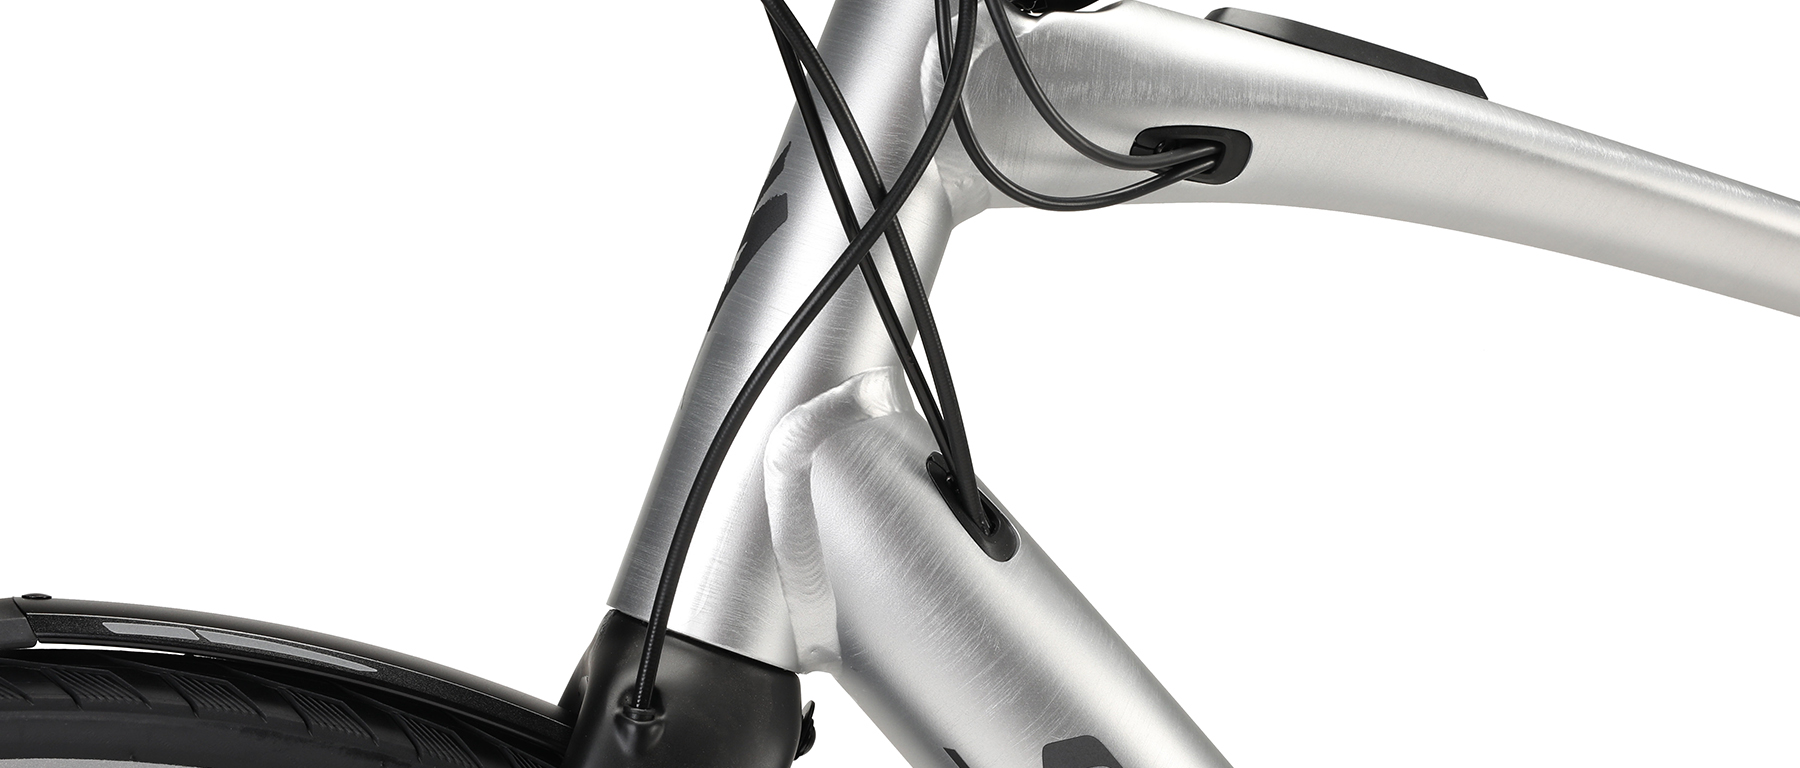 Specialized Turbo Vado SL 5.0 EQ Bicycle 2022